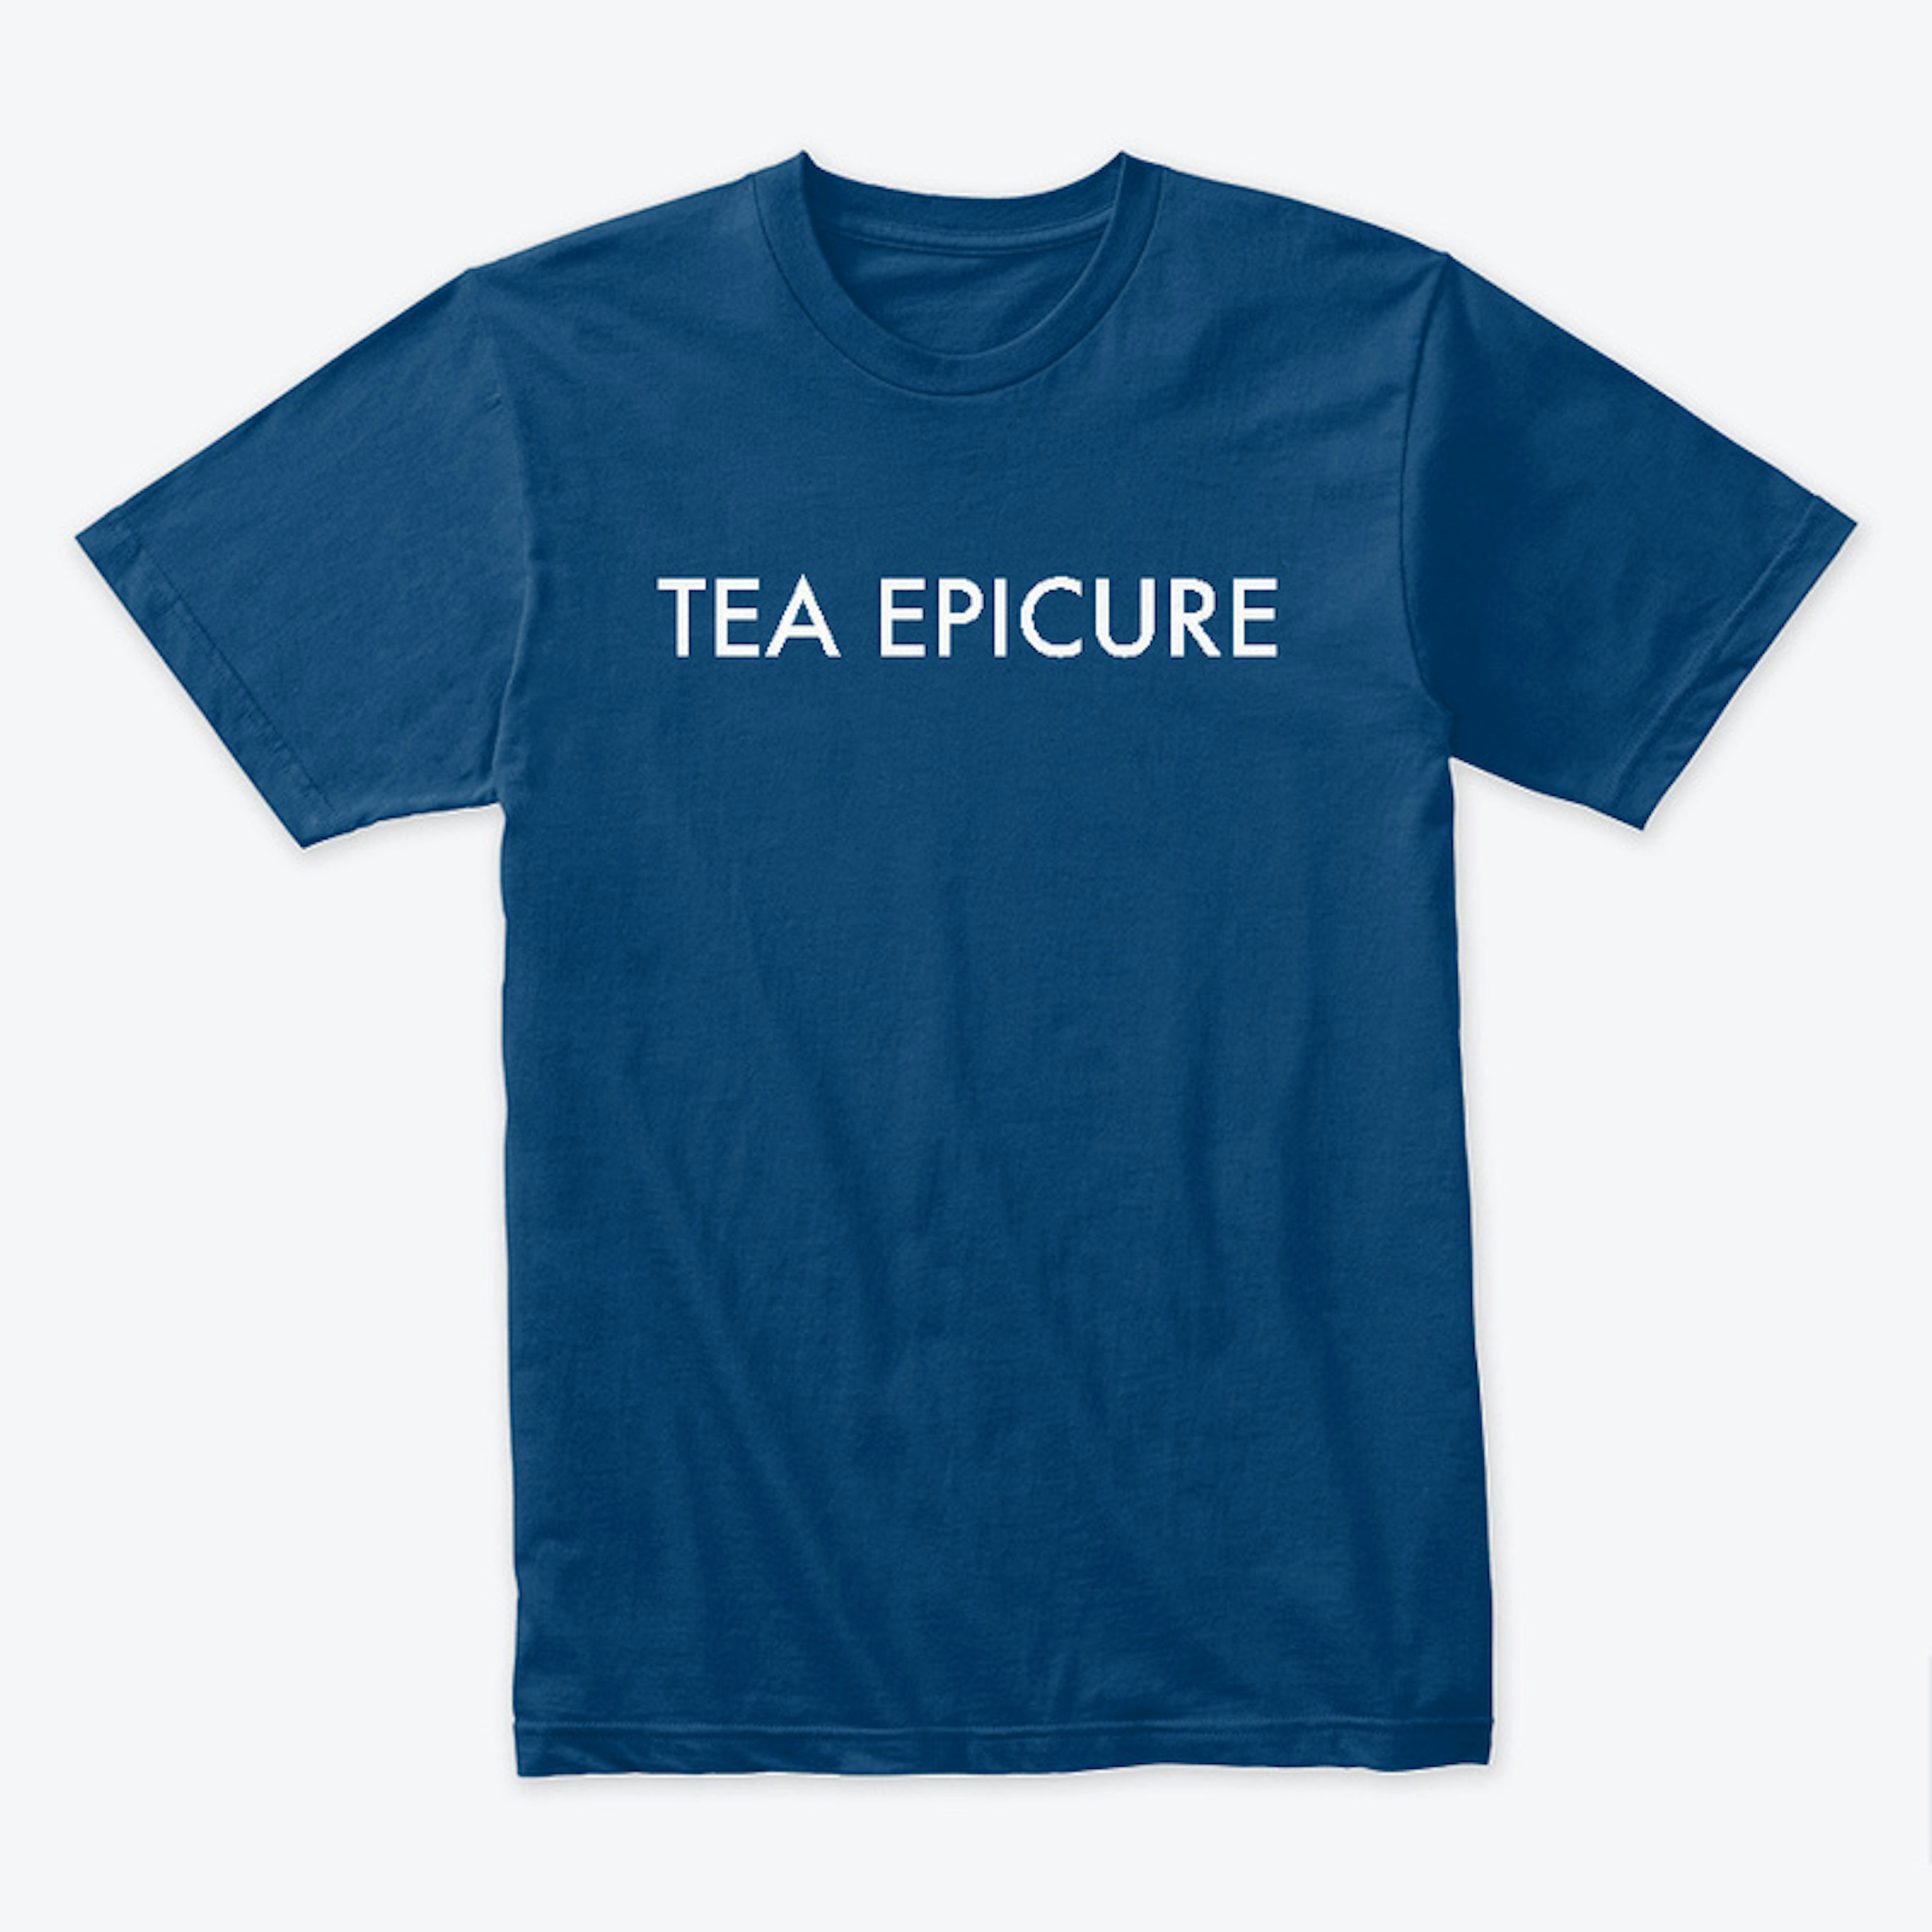 Tea Epicure